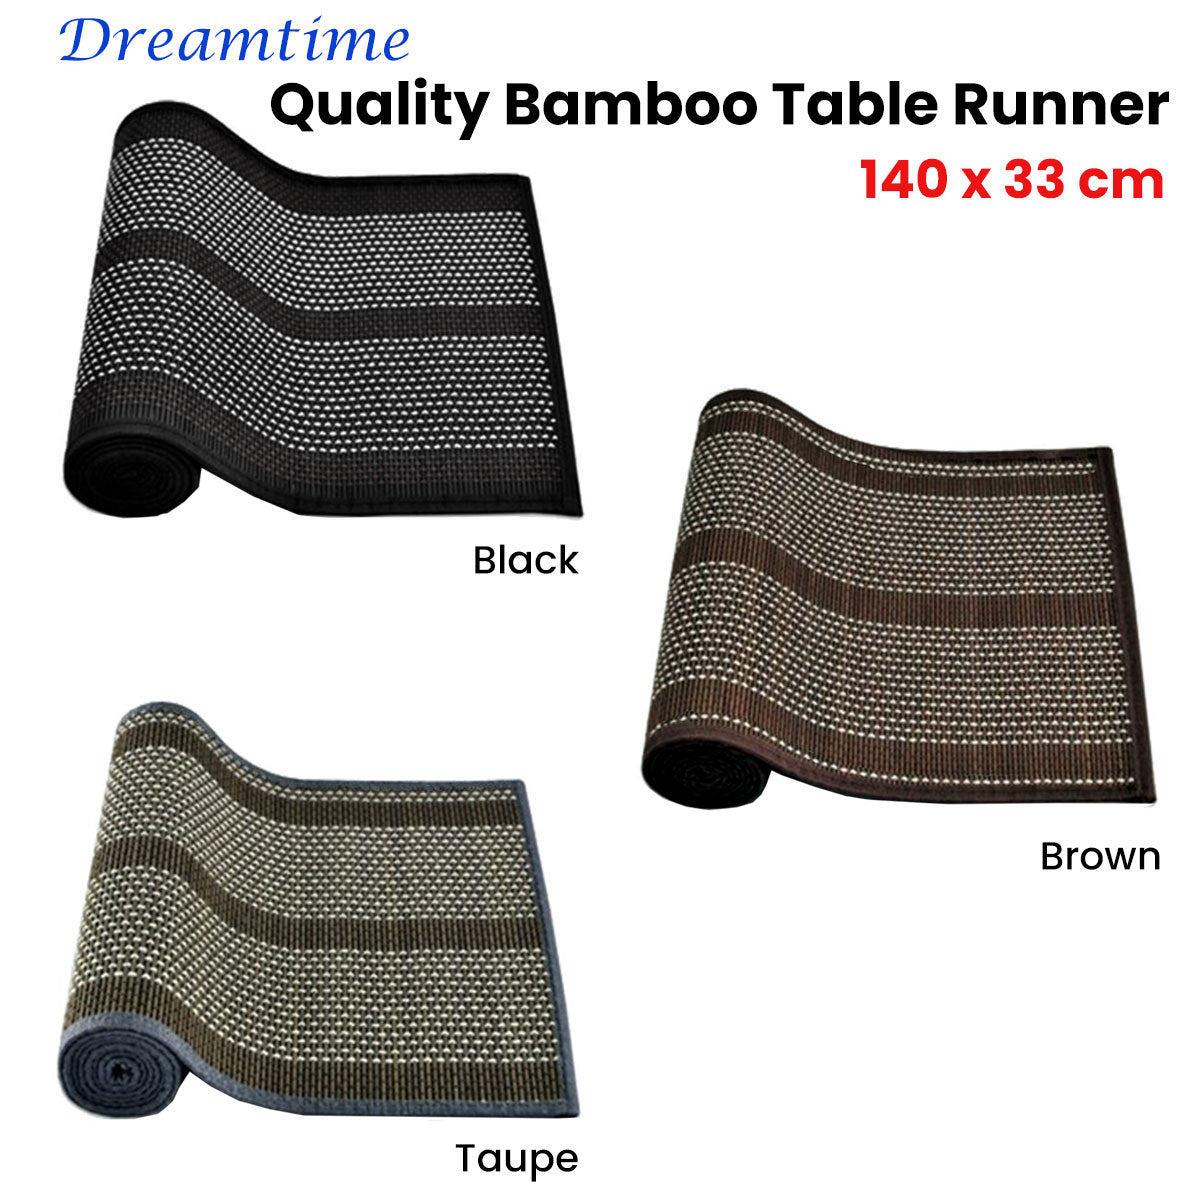 Dreamtime Bamboo Table Runner 140 x 33cm Black